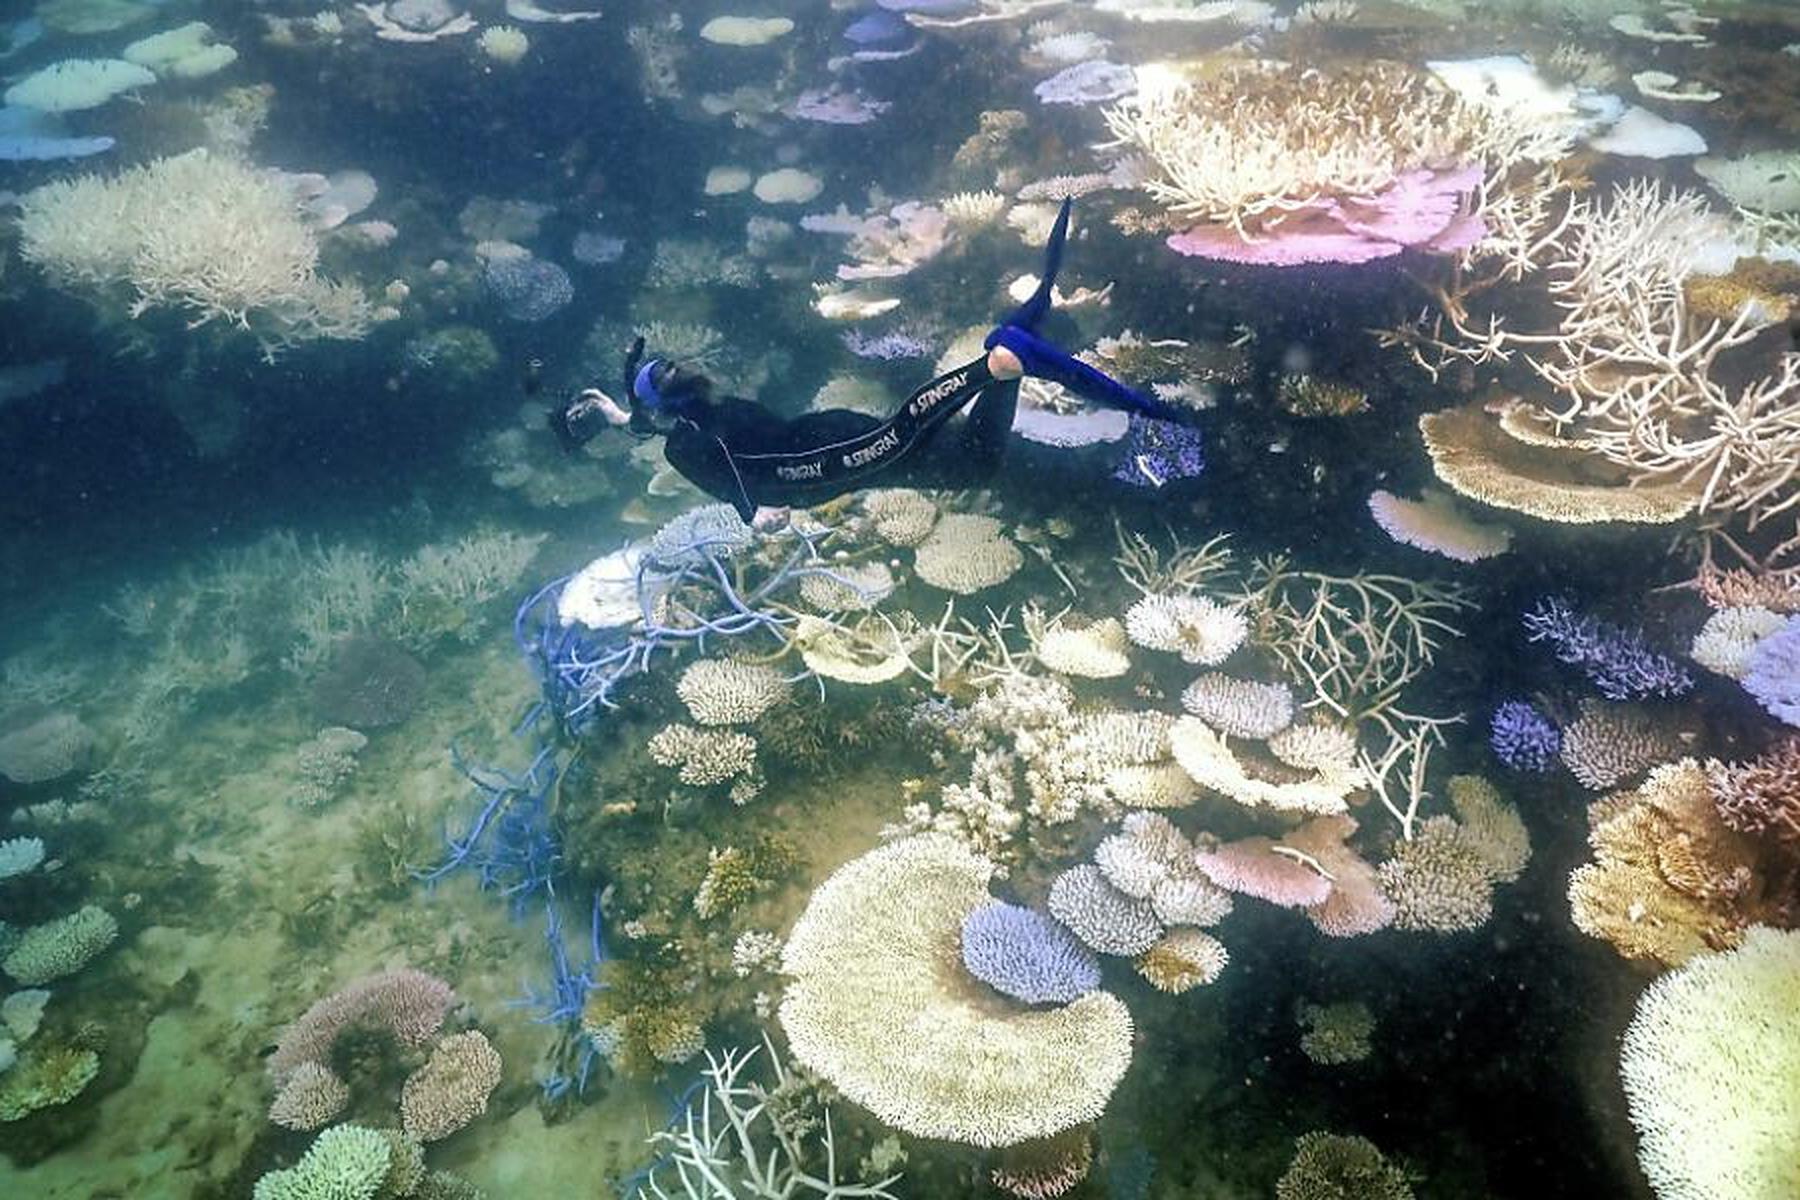 Korallenbleiche in Malaysia schreitet stark voran, auch Australien massiv betroffen